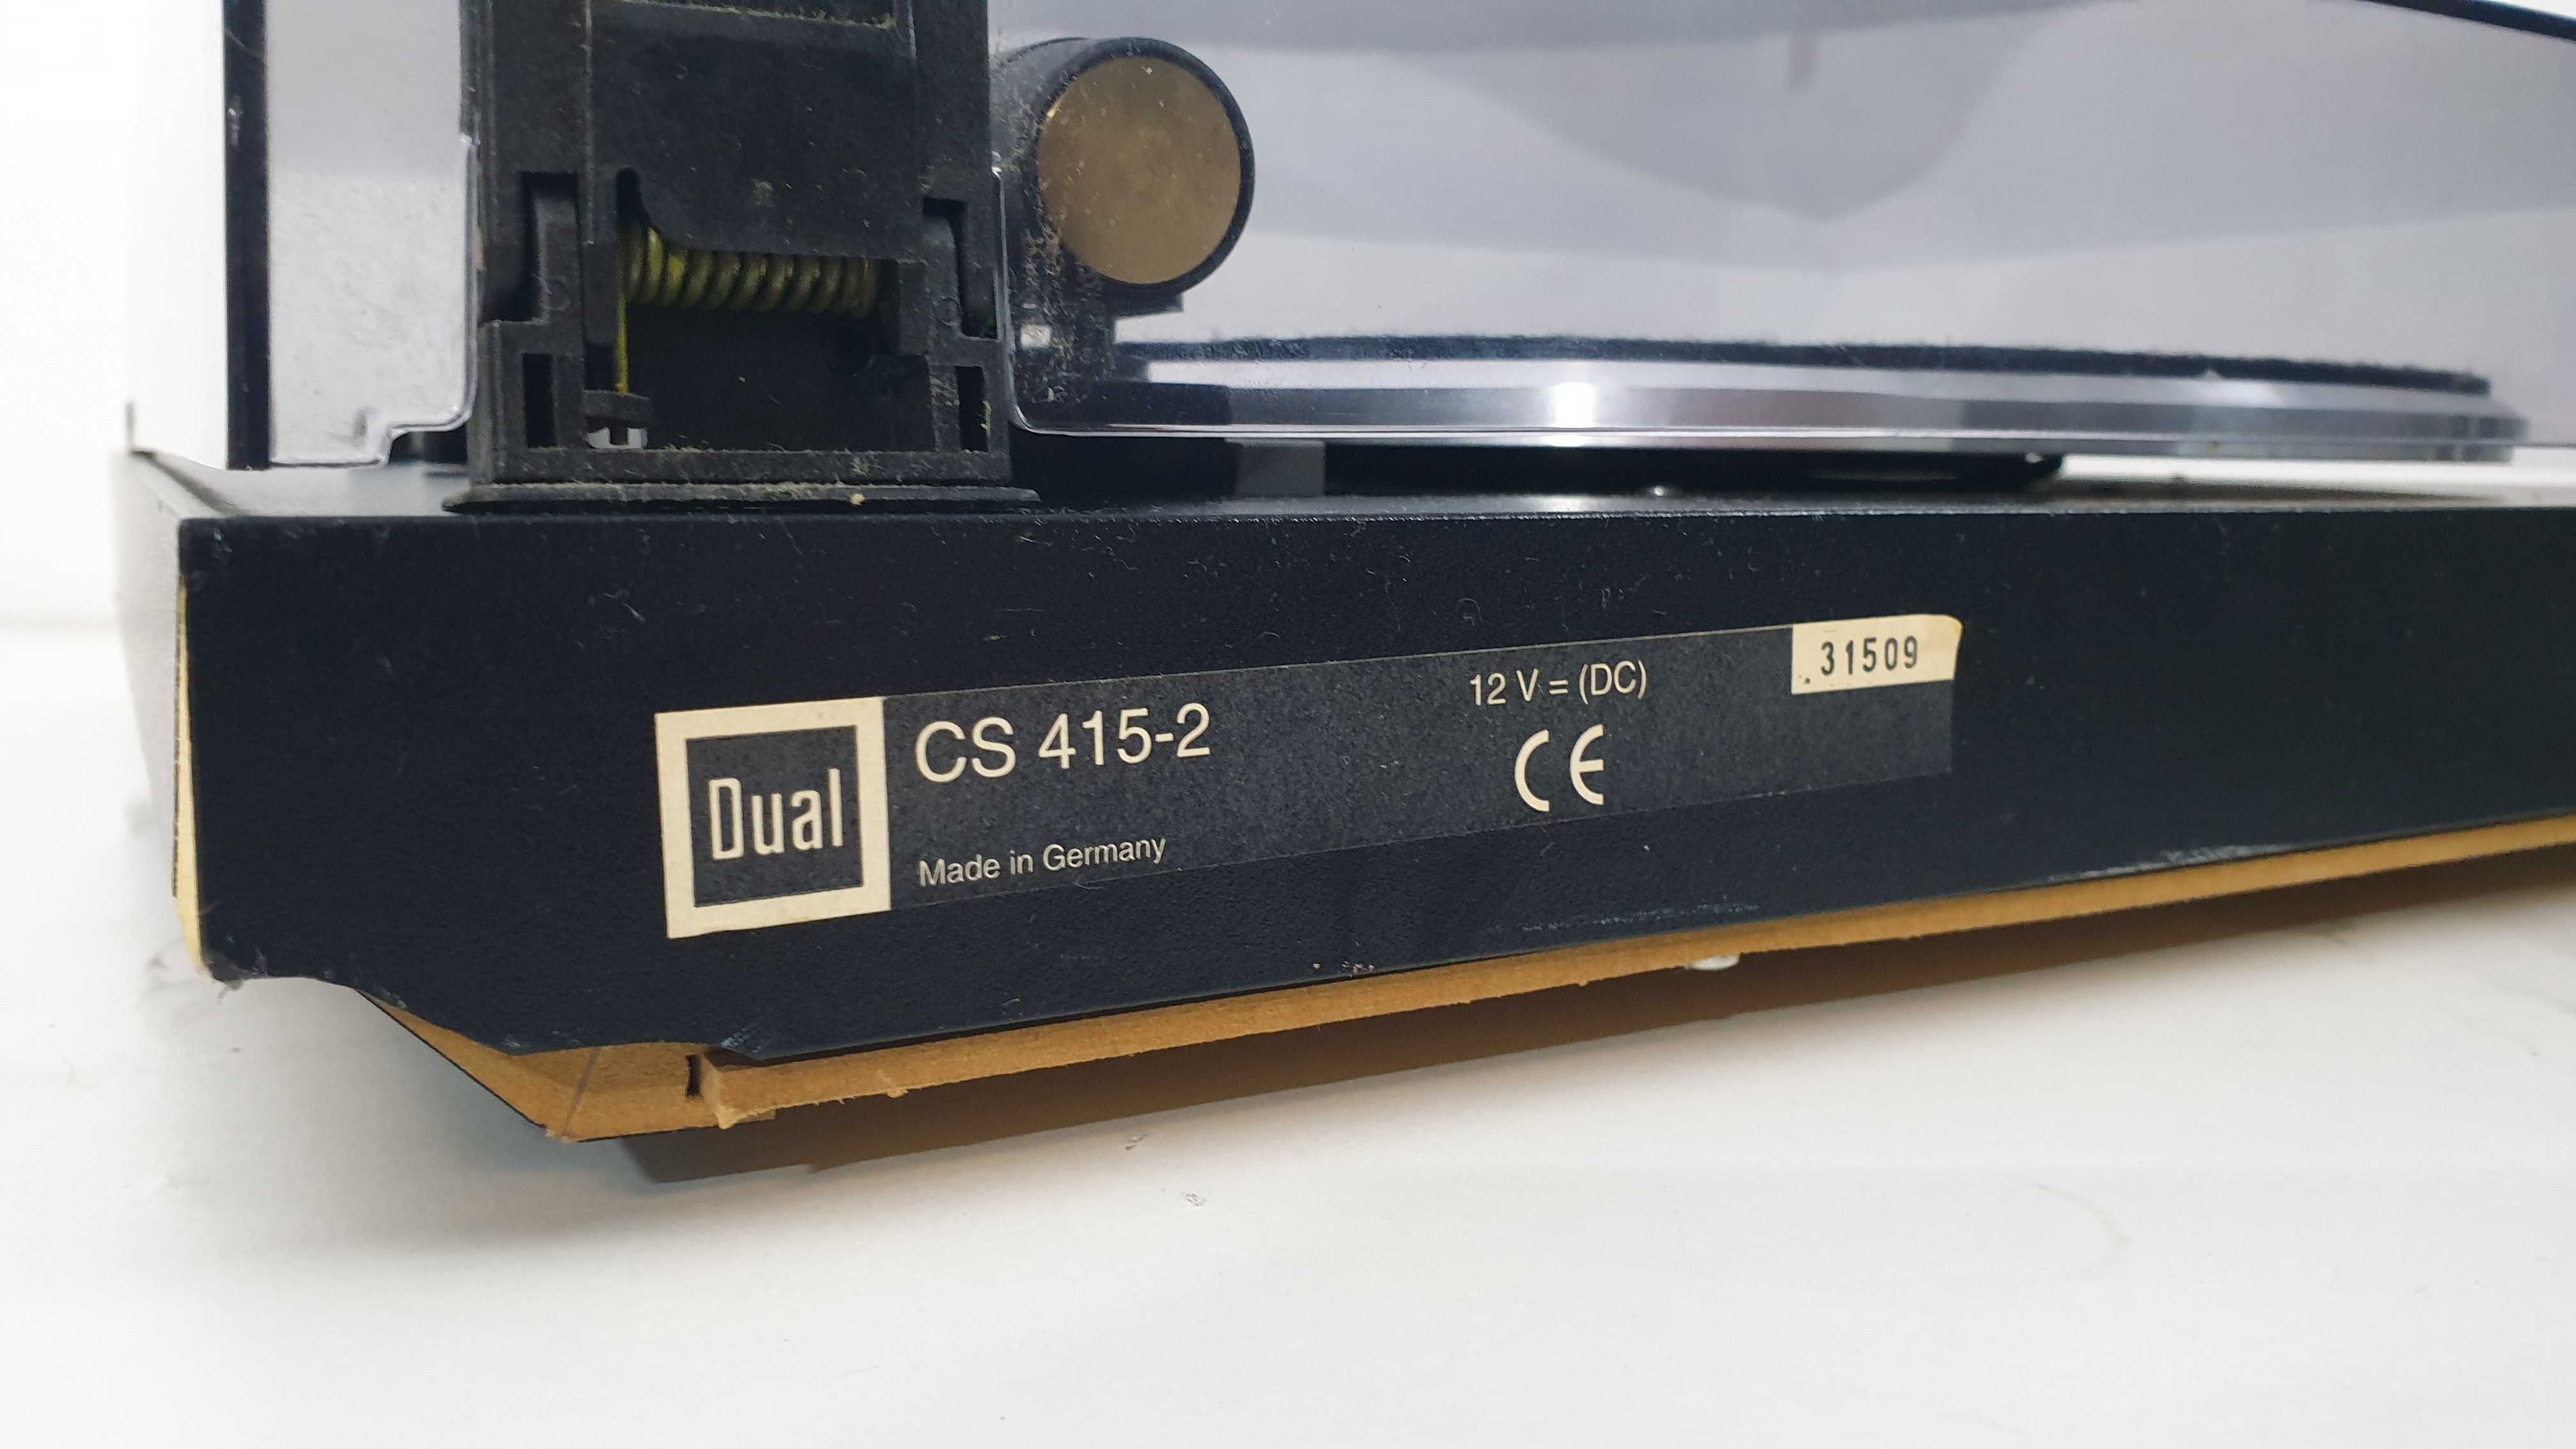 Gramofon Dual CS 415-2